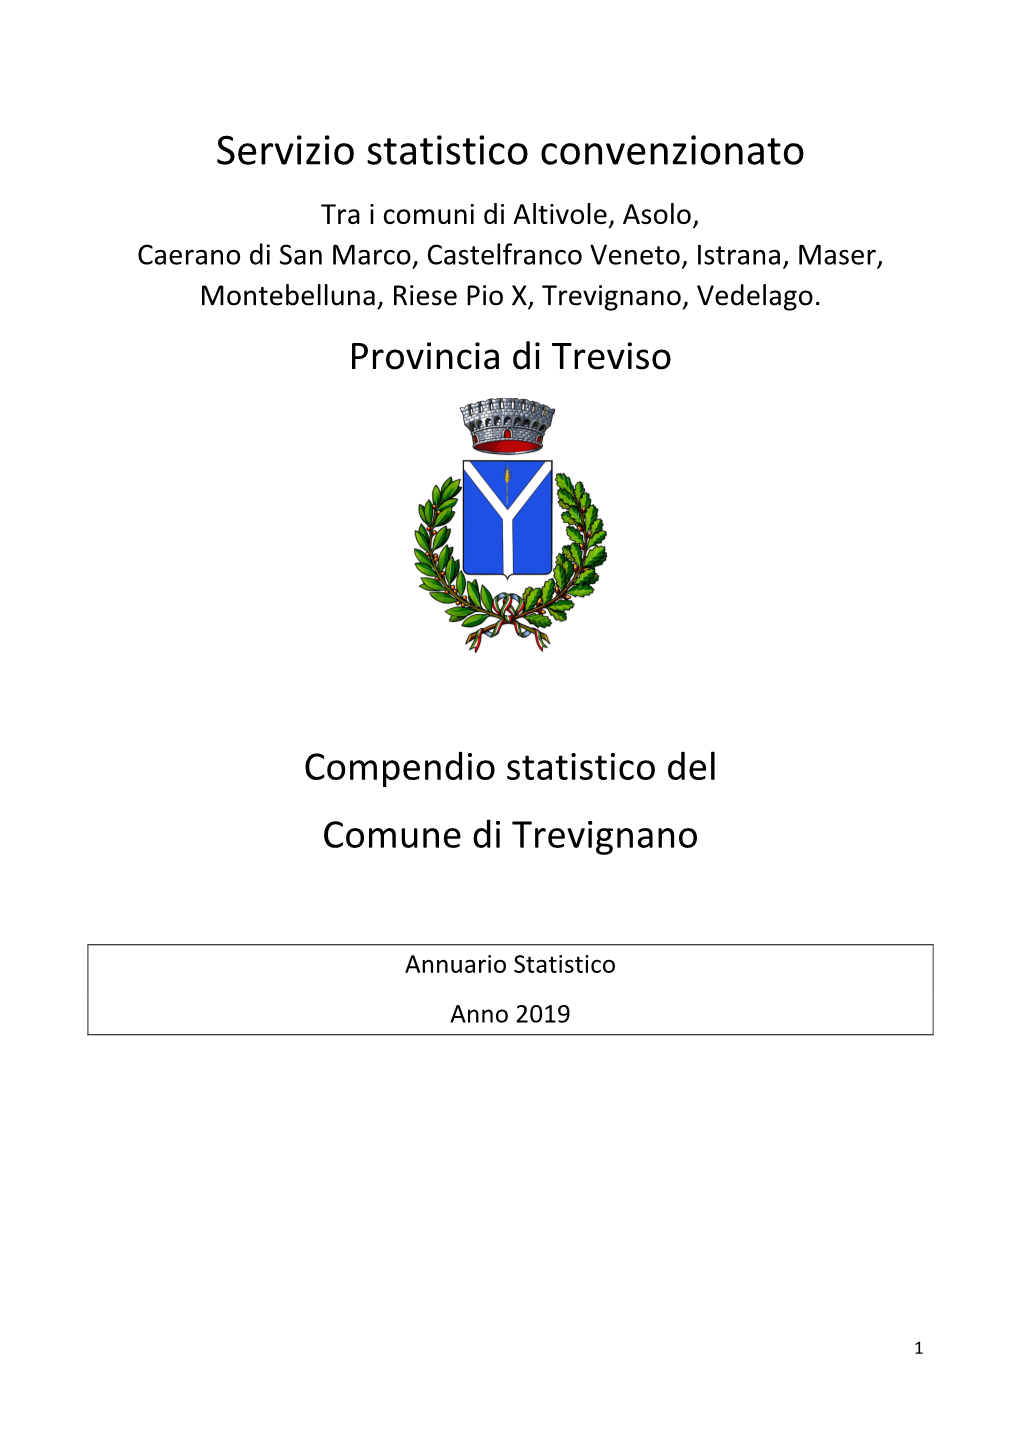 Annuario Statistico Del Comune Di Trevignano